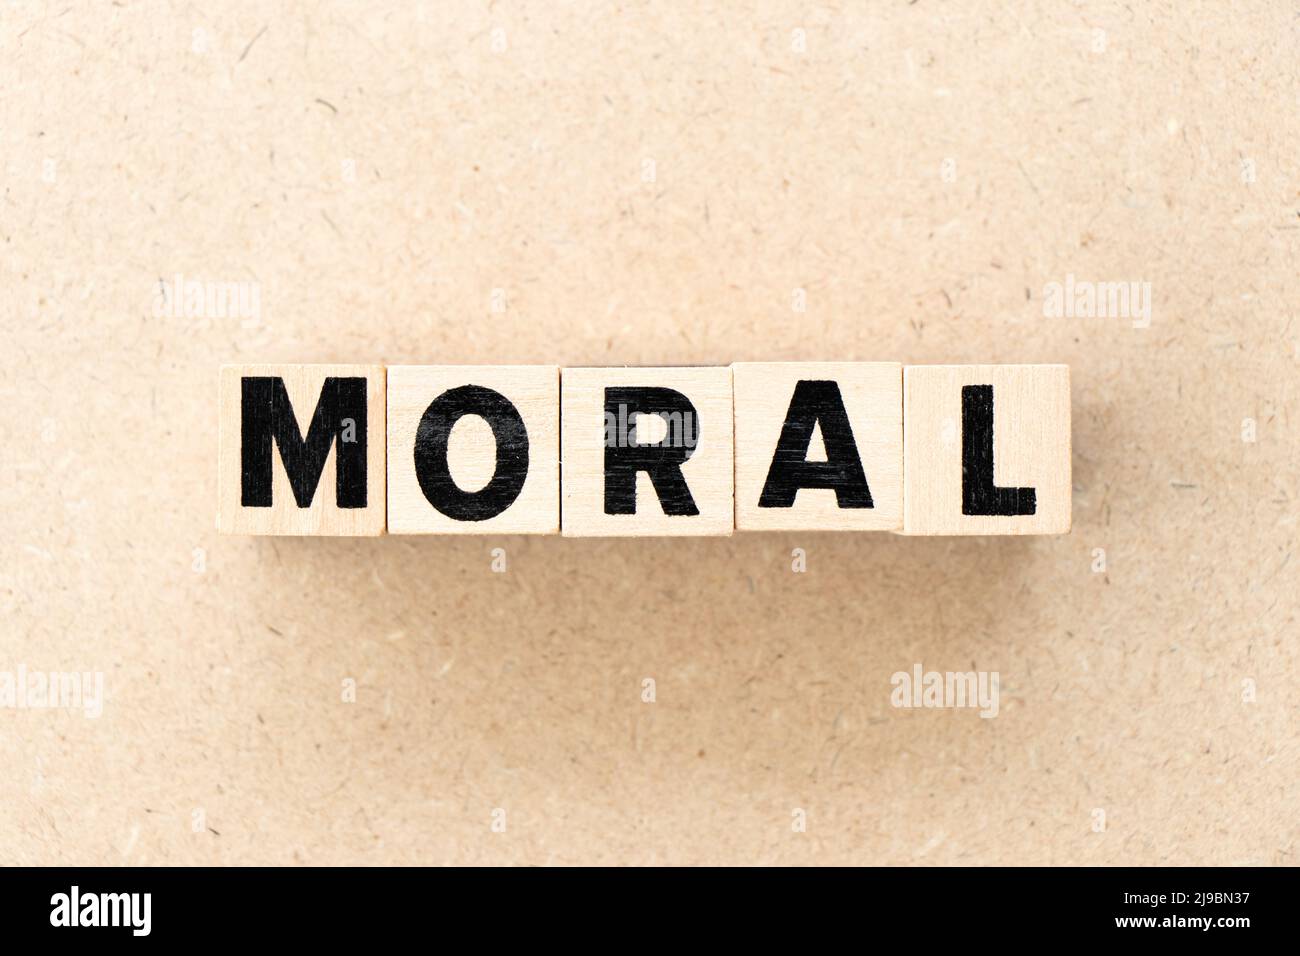 Letra del alfabeto bloque en la palabra moral sobre fondo de madera Foto de stock